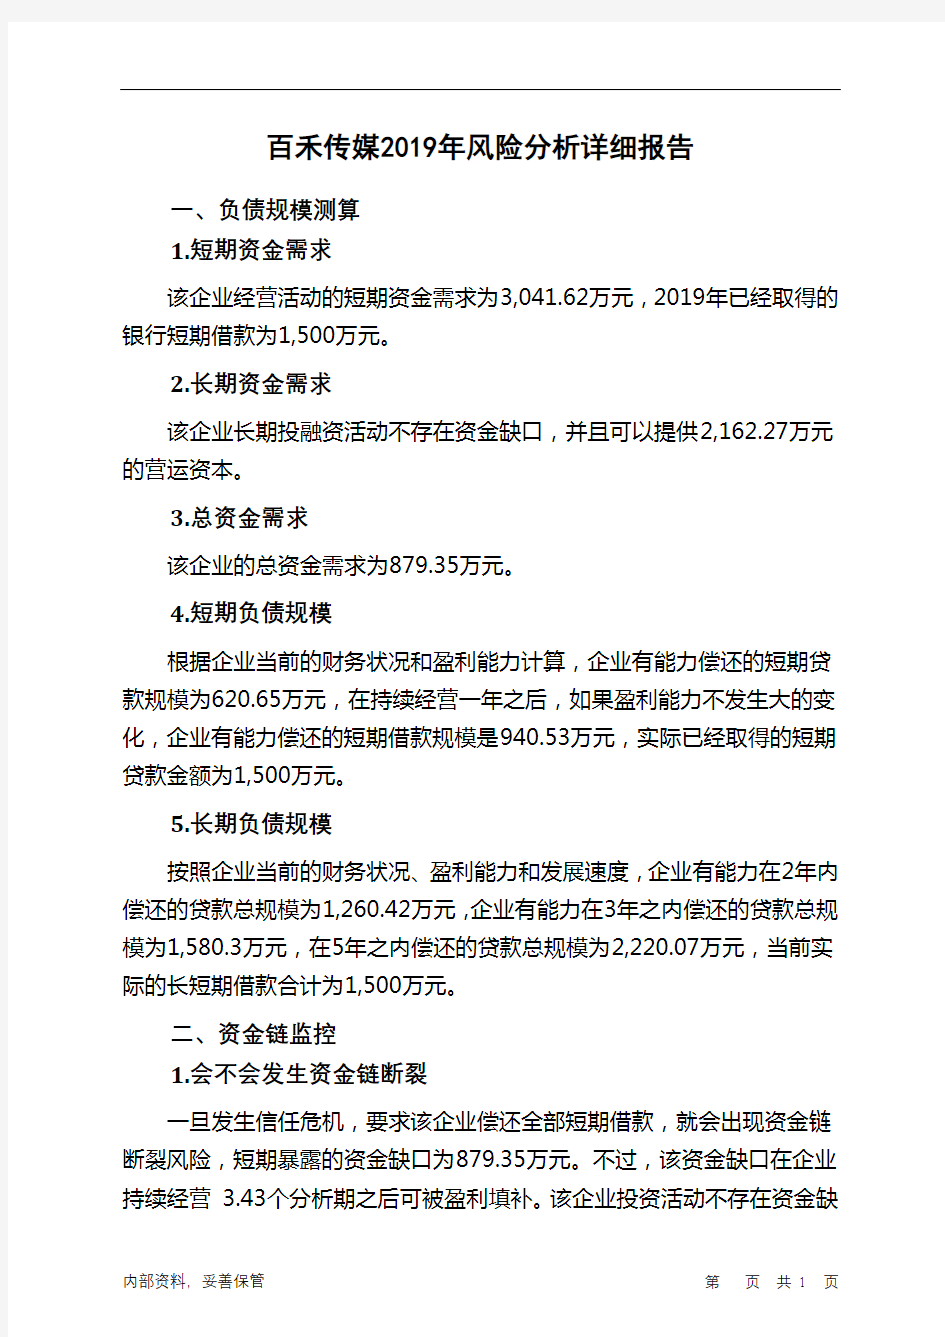 百禾传媒2019年财务风险分析详细报告